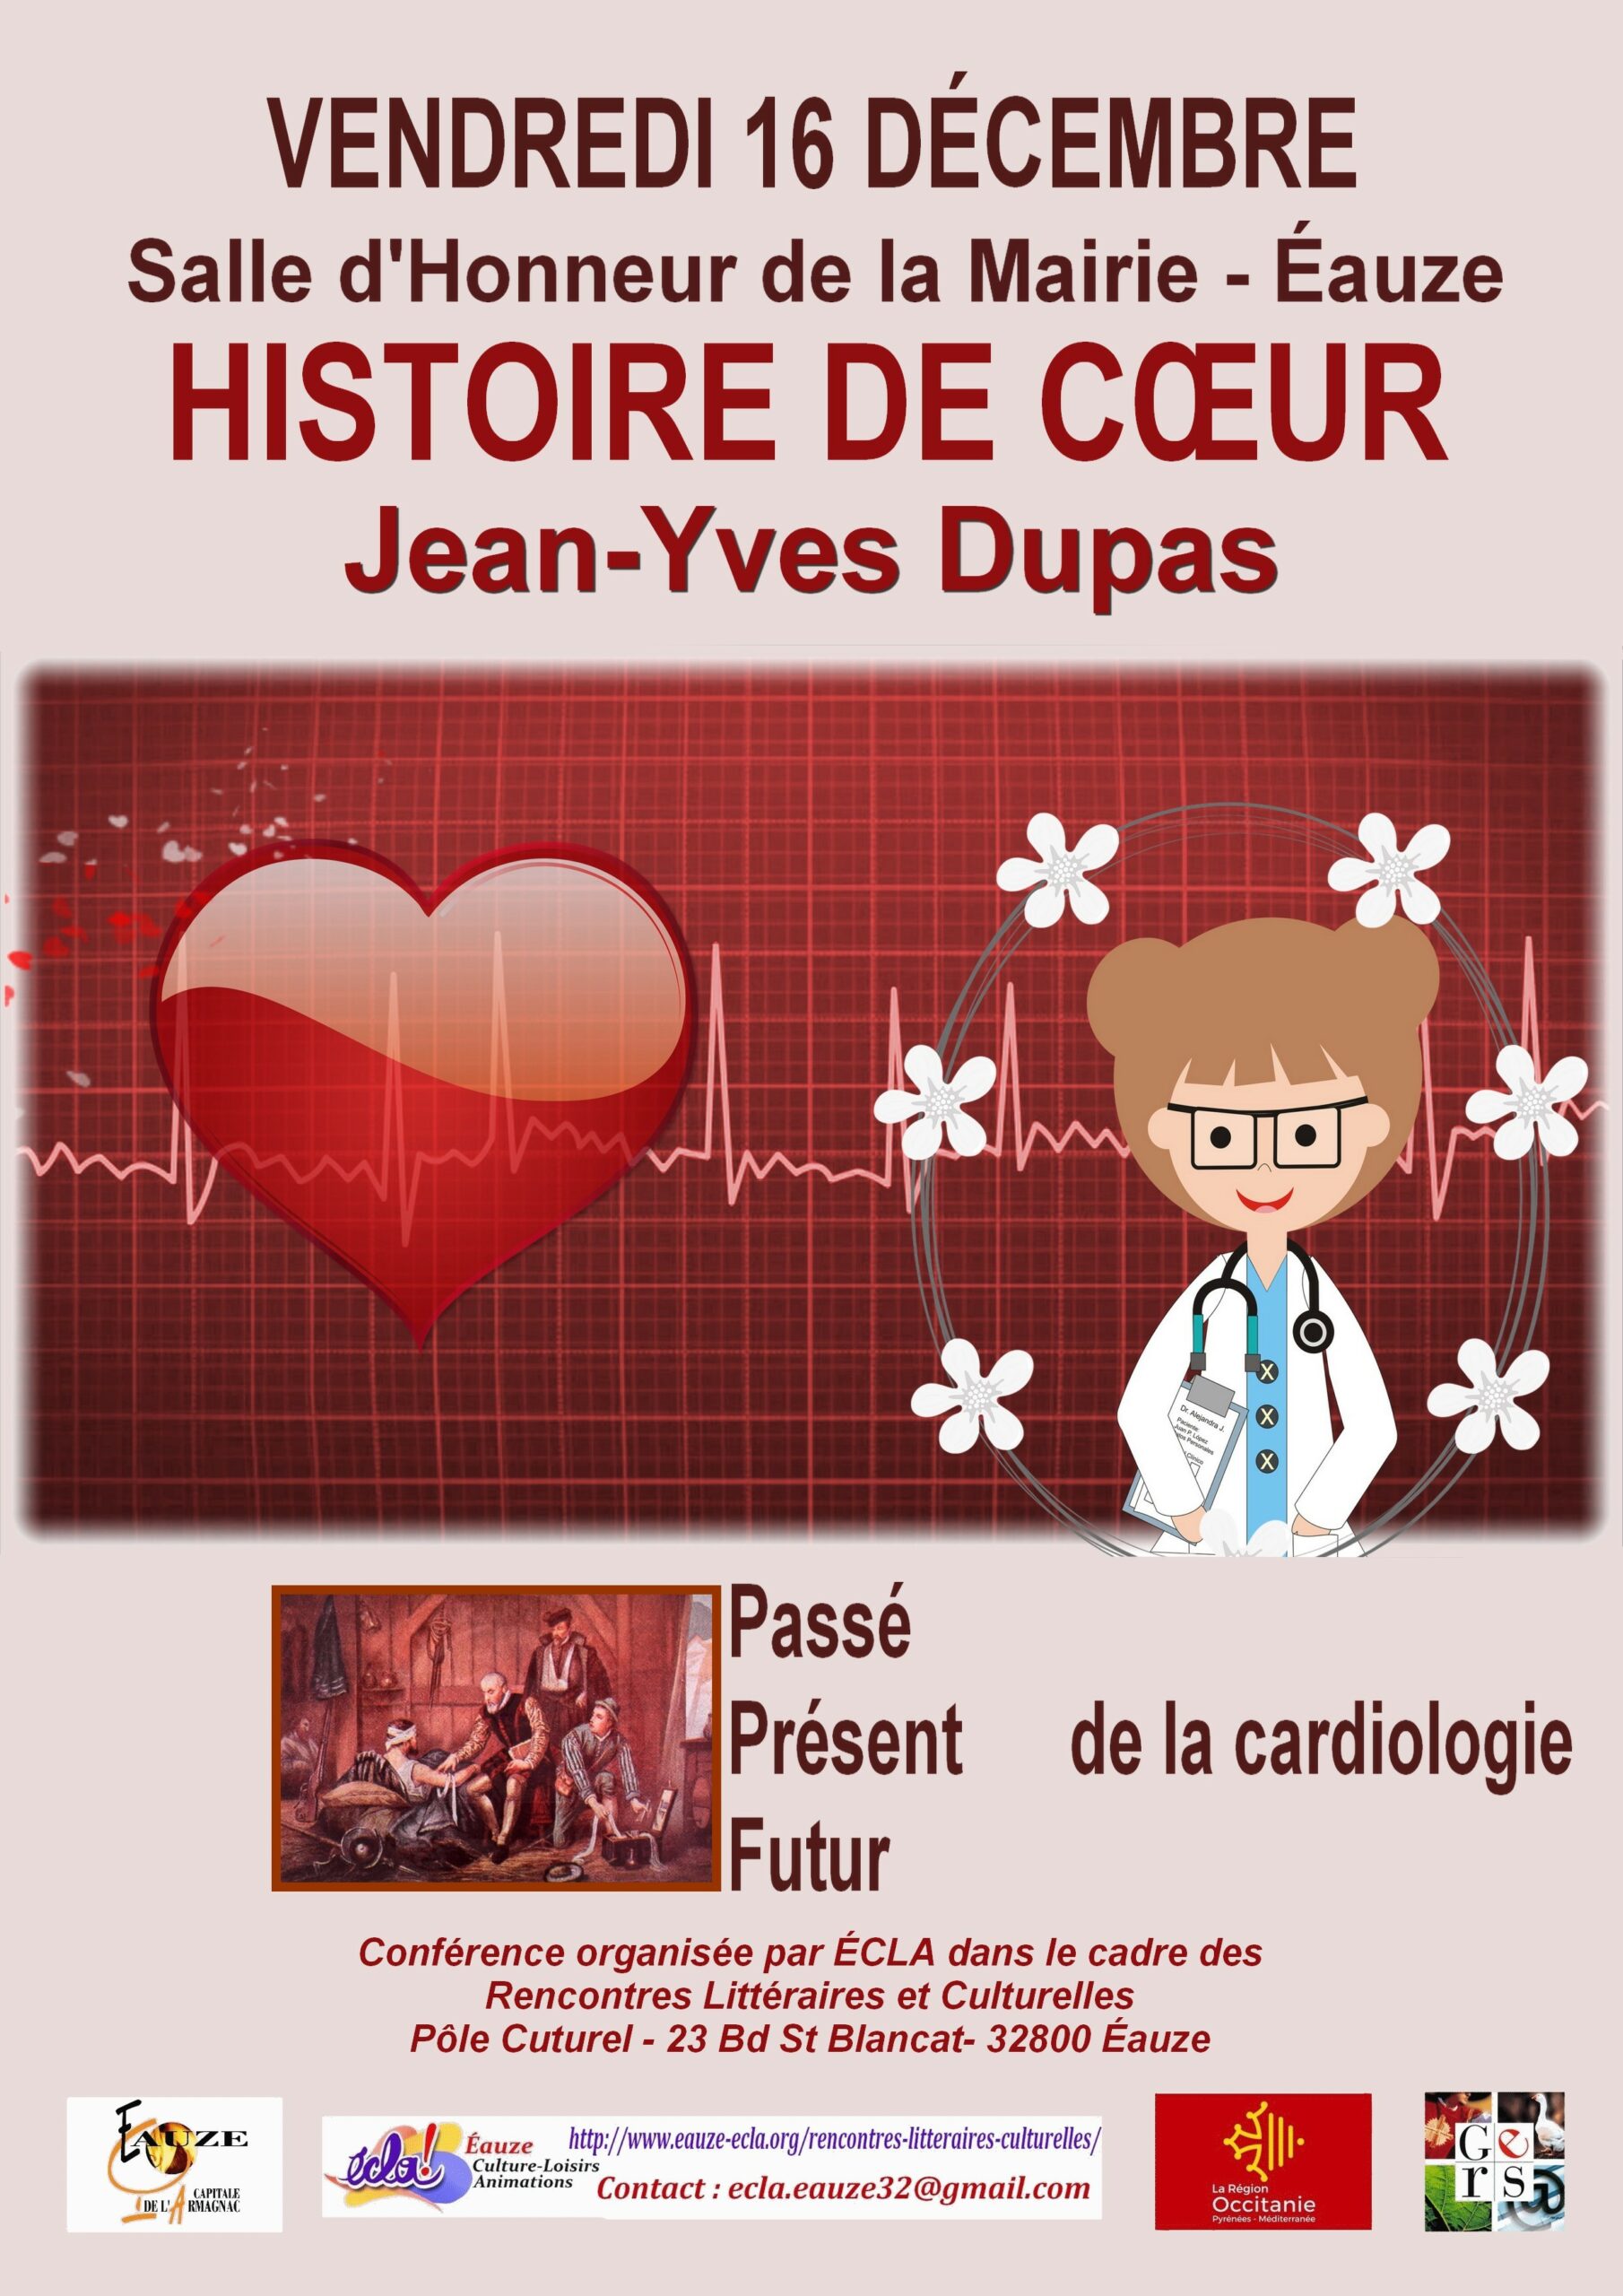 Cardiologie(1)